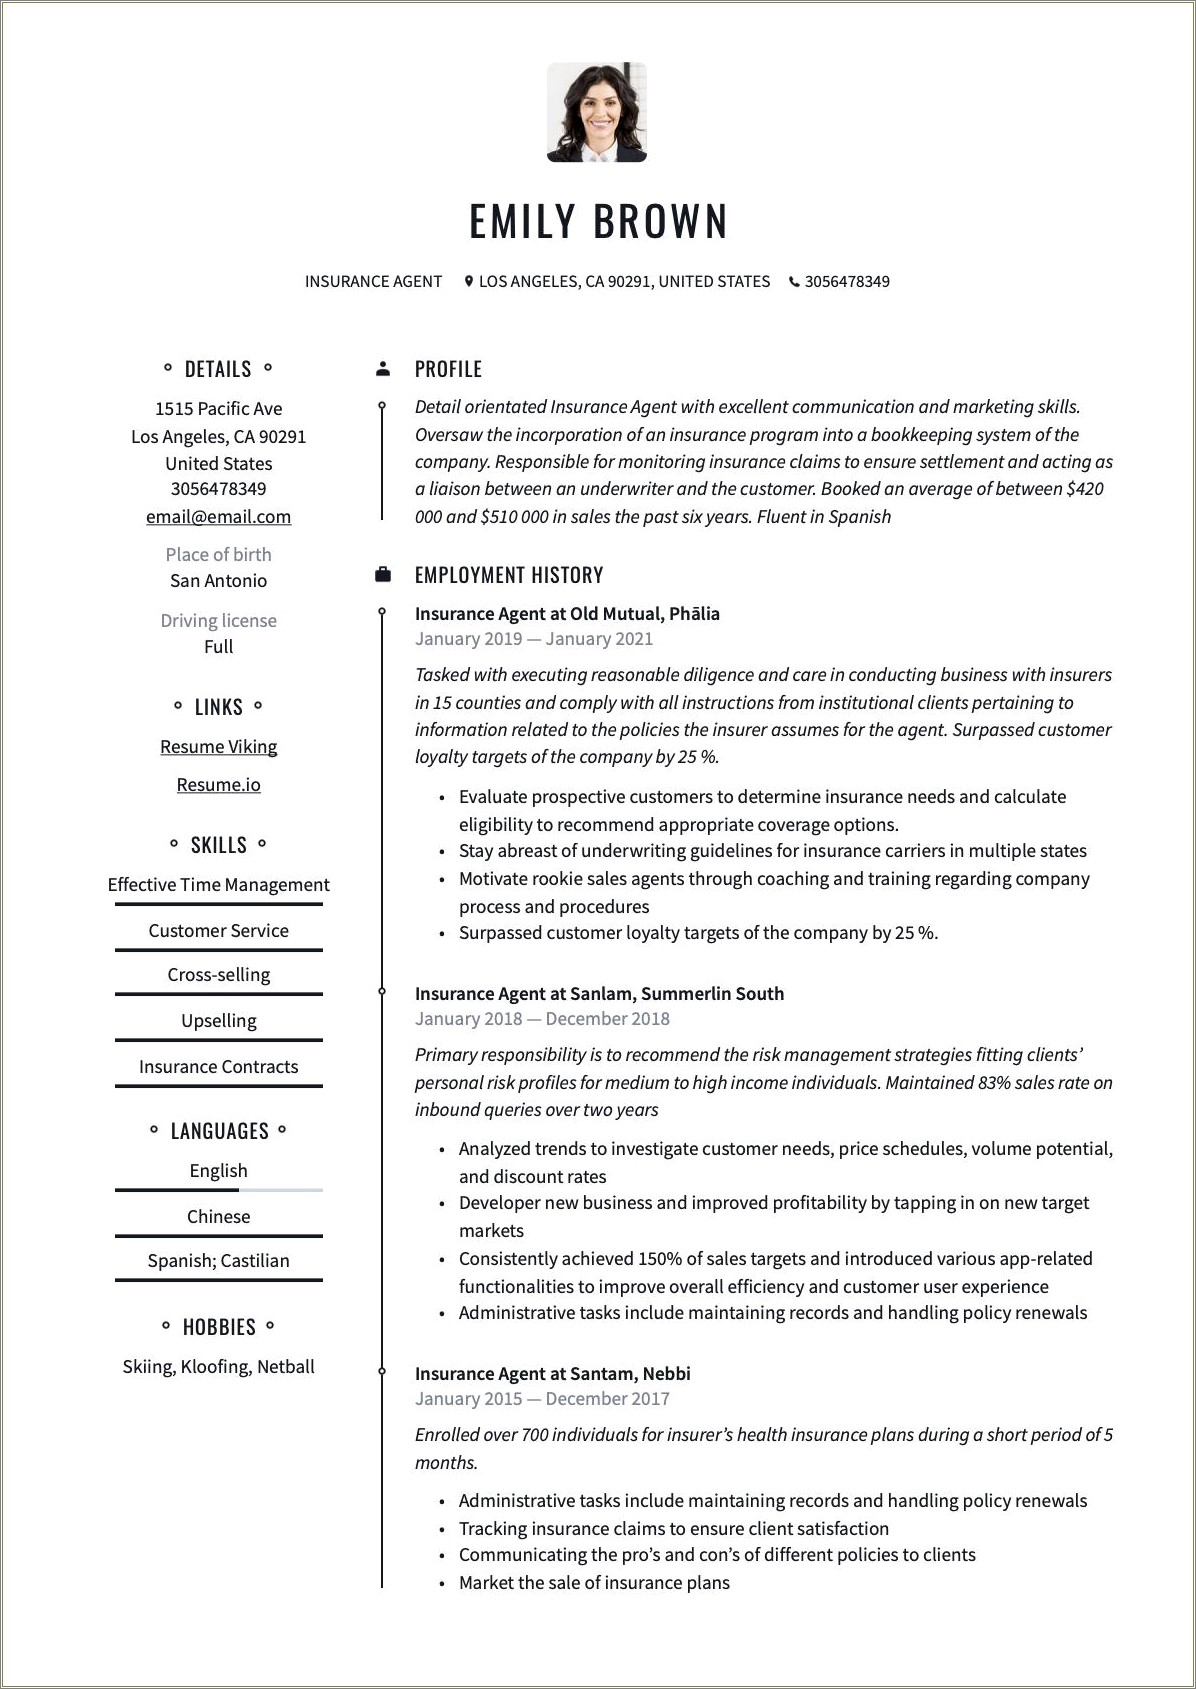 Sample Resume For An Insurance Underwriter